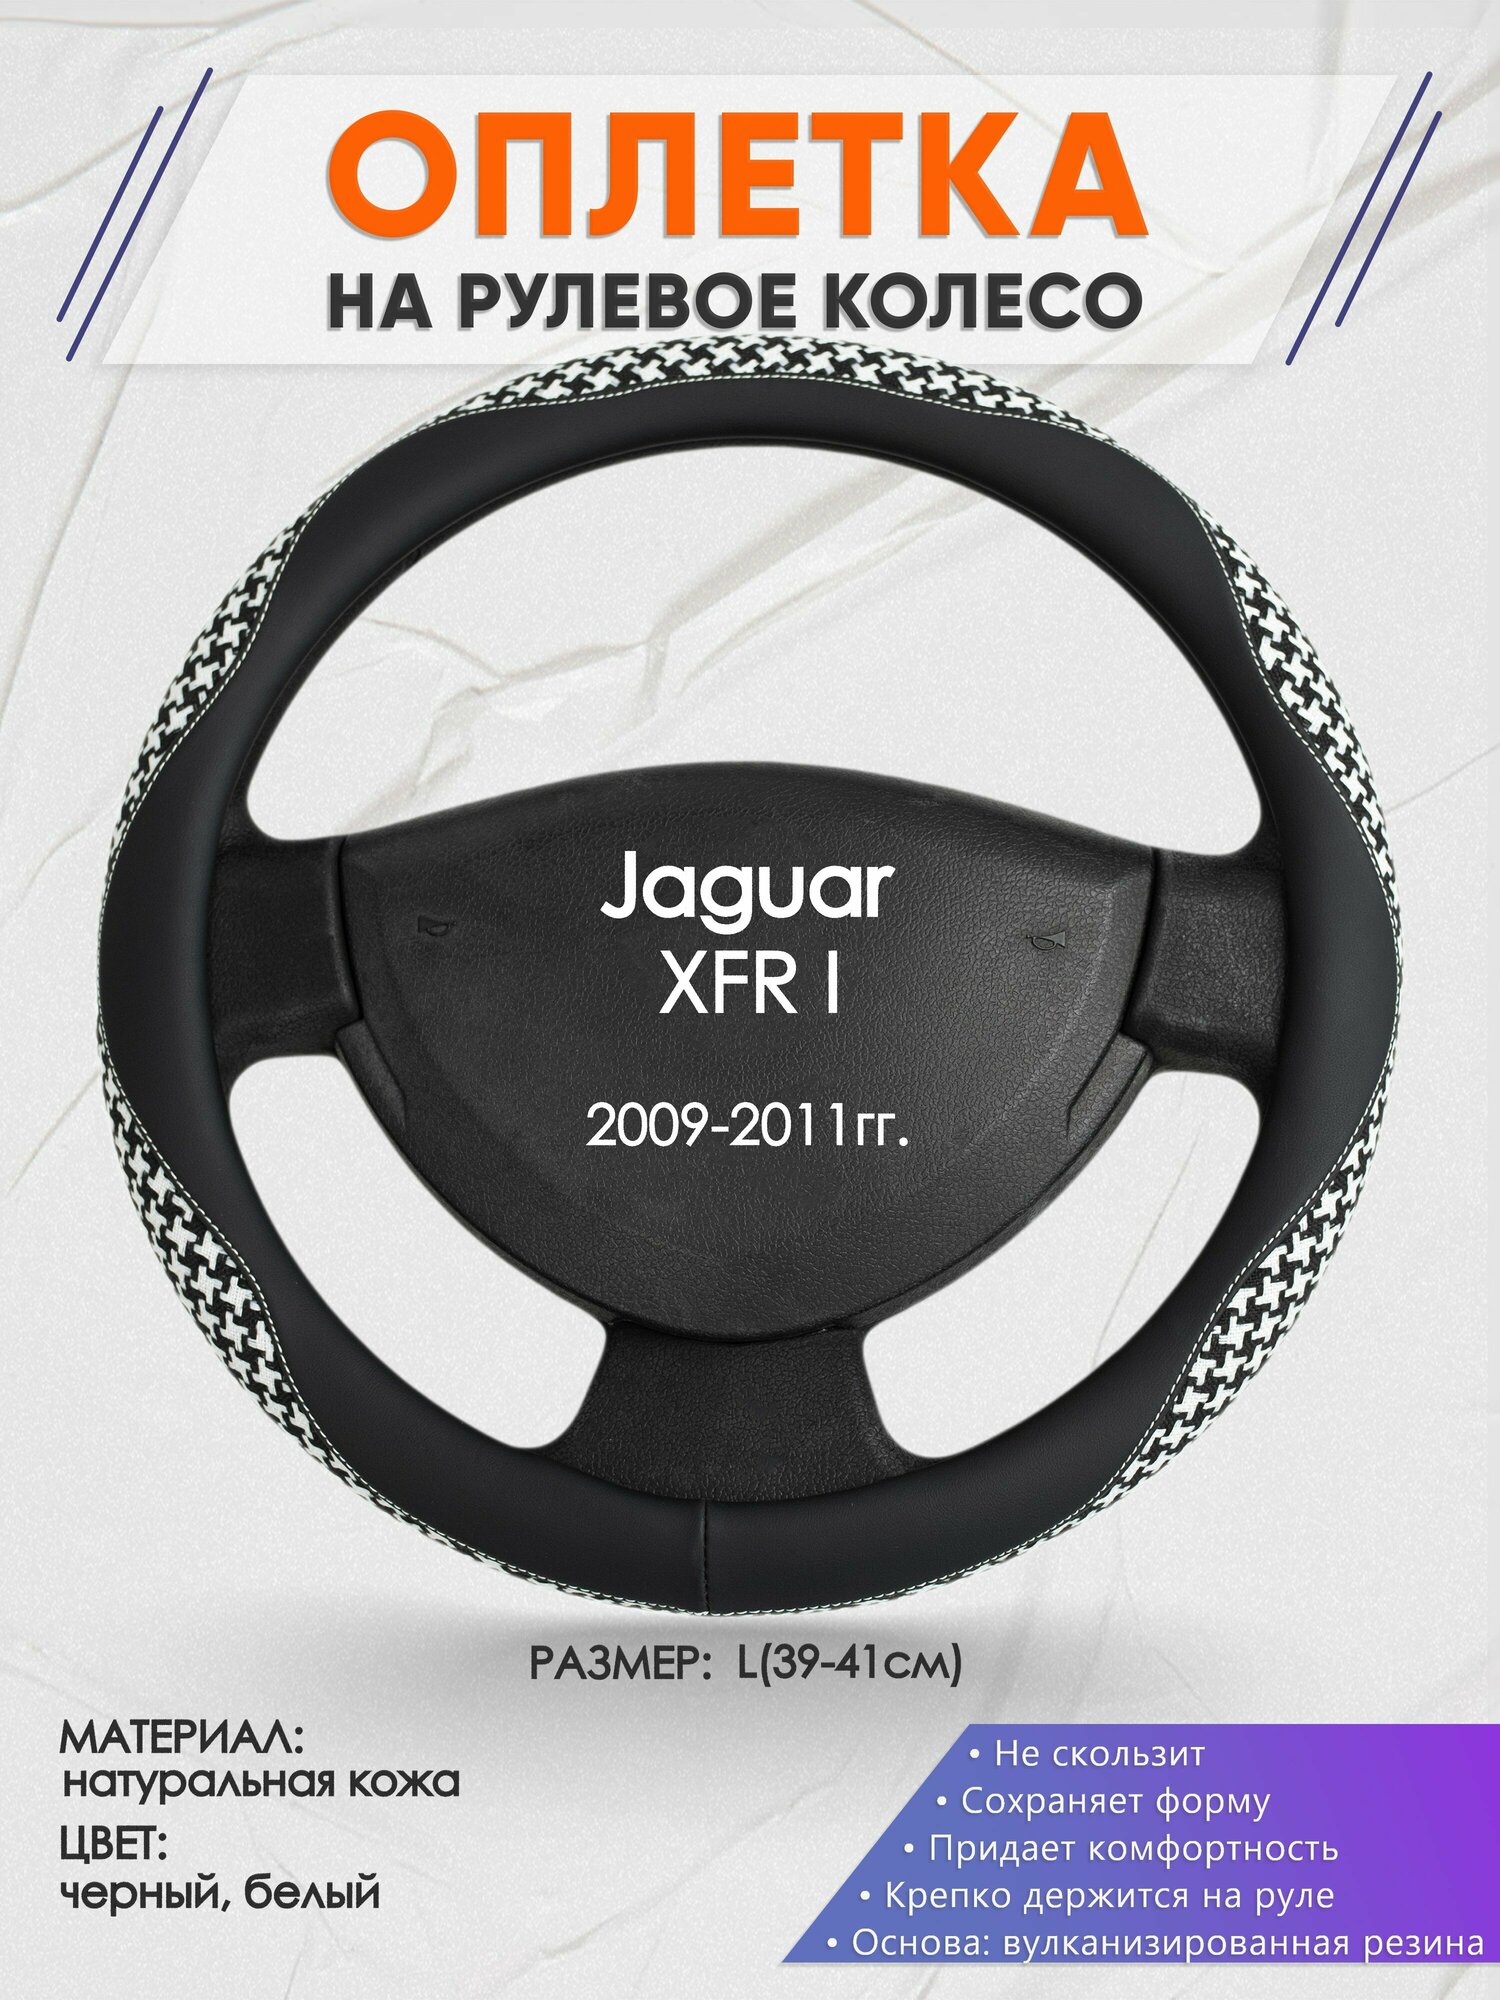 Оплетка на руль для Jaguar XFR I(Ягуар иксфр) 2009-2011, L(39-41см), Натуральная кожа 21